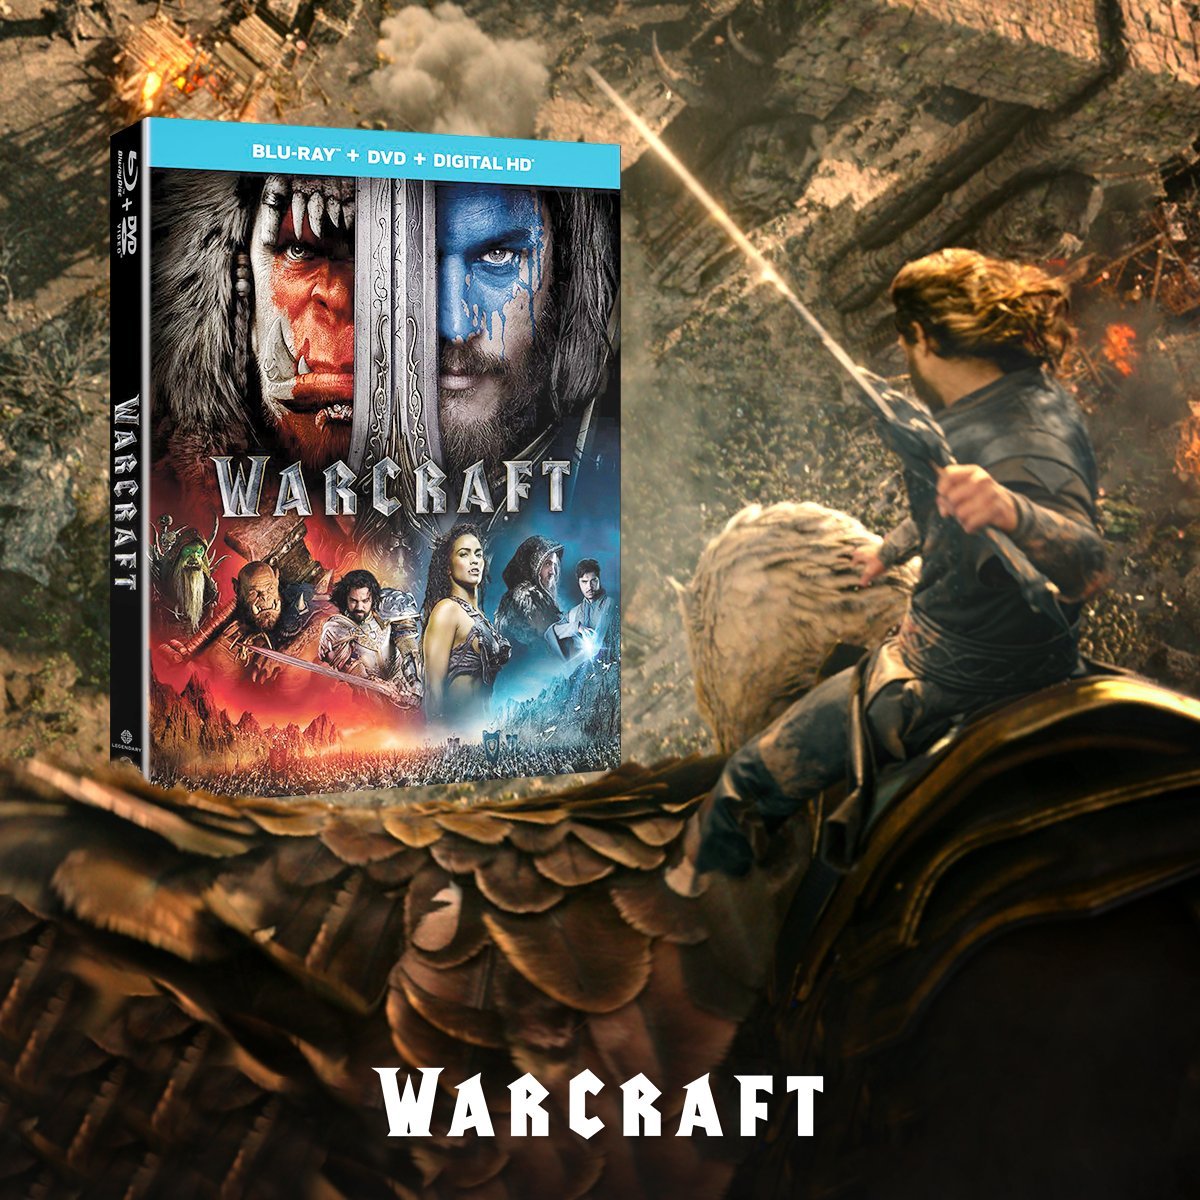 warcraft